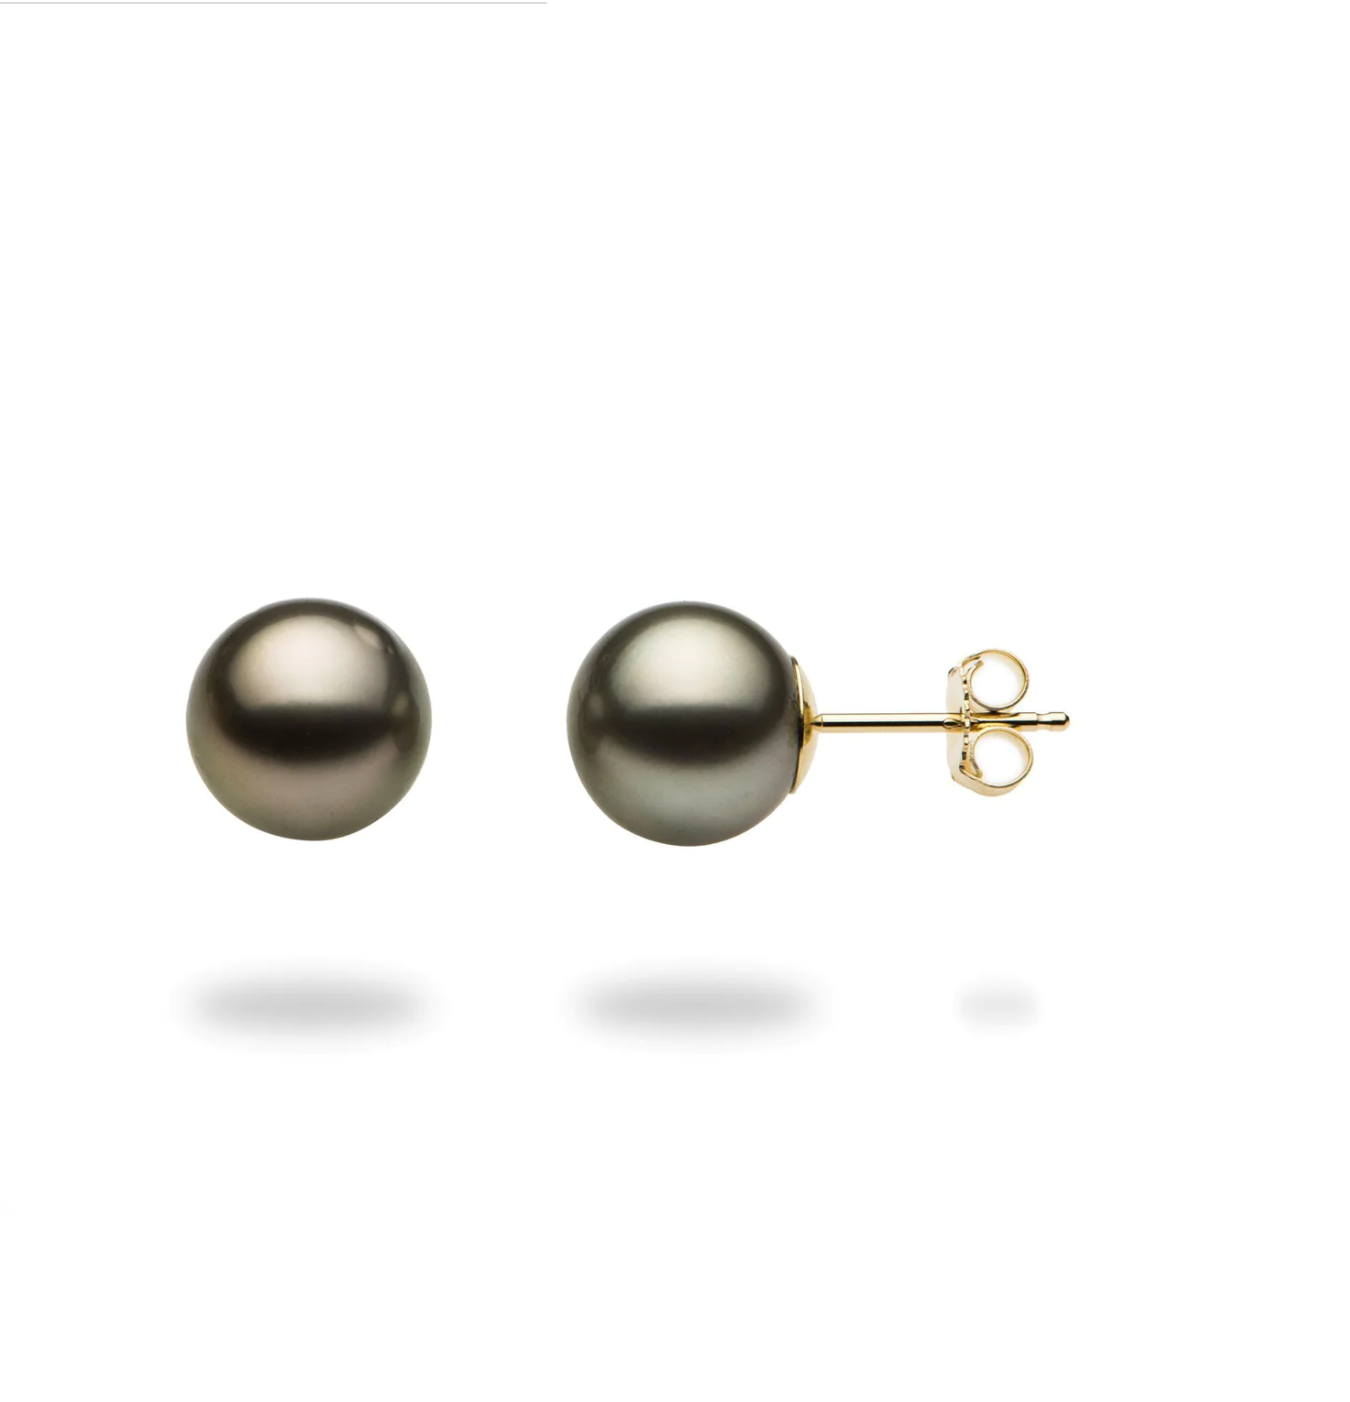 Black Genuine Pearl 14K Solid Gold Earrings Studs - BEYOND